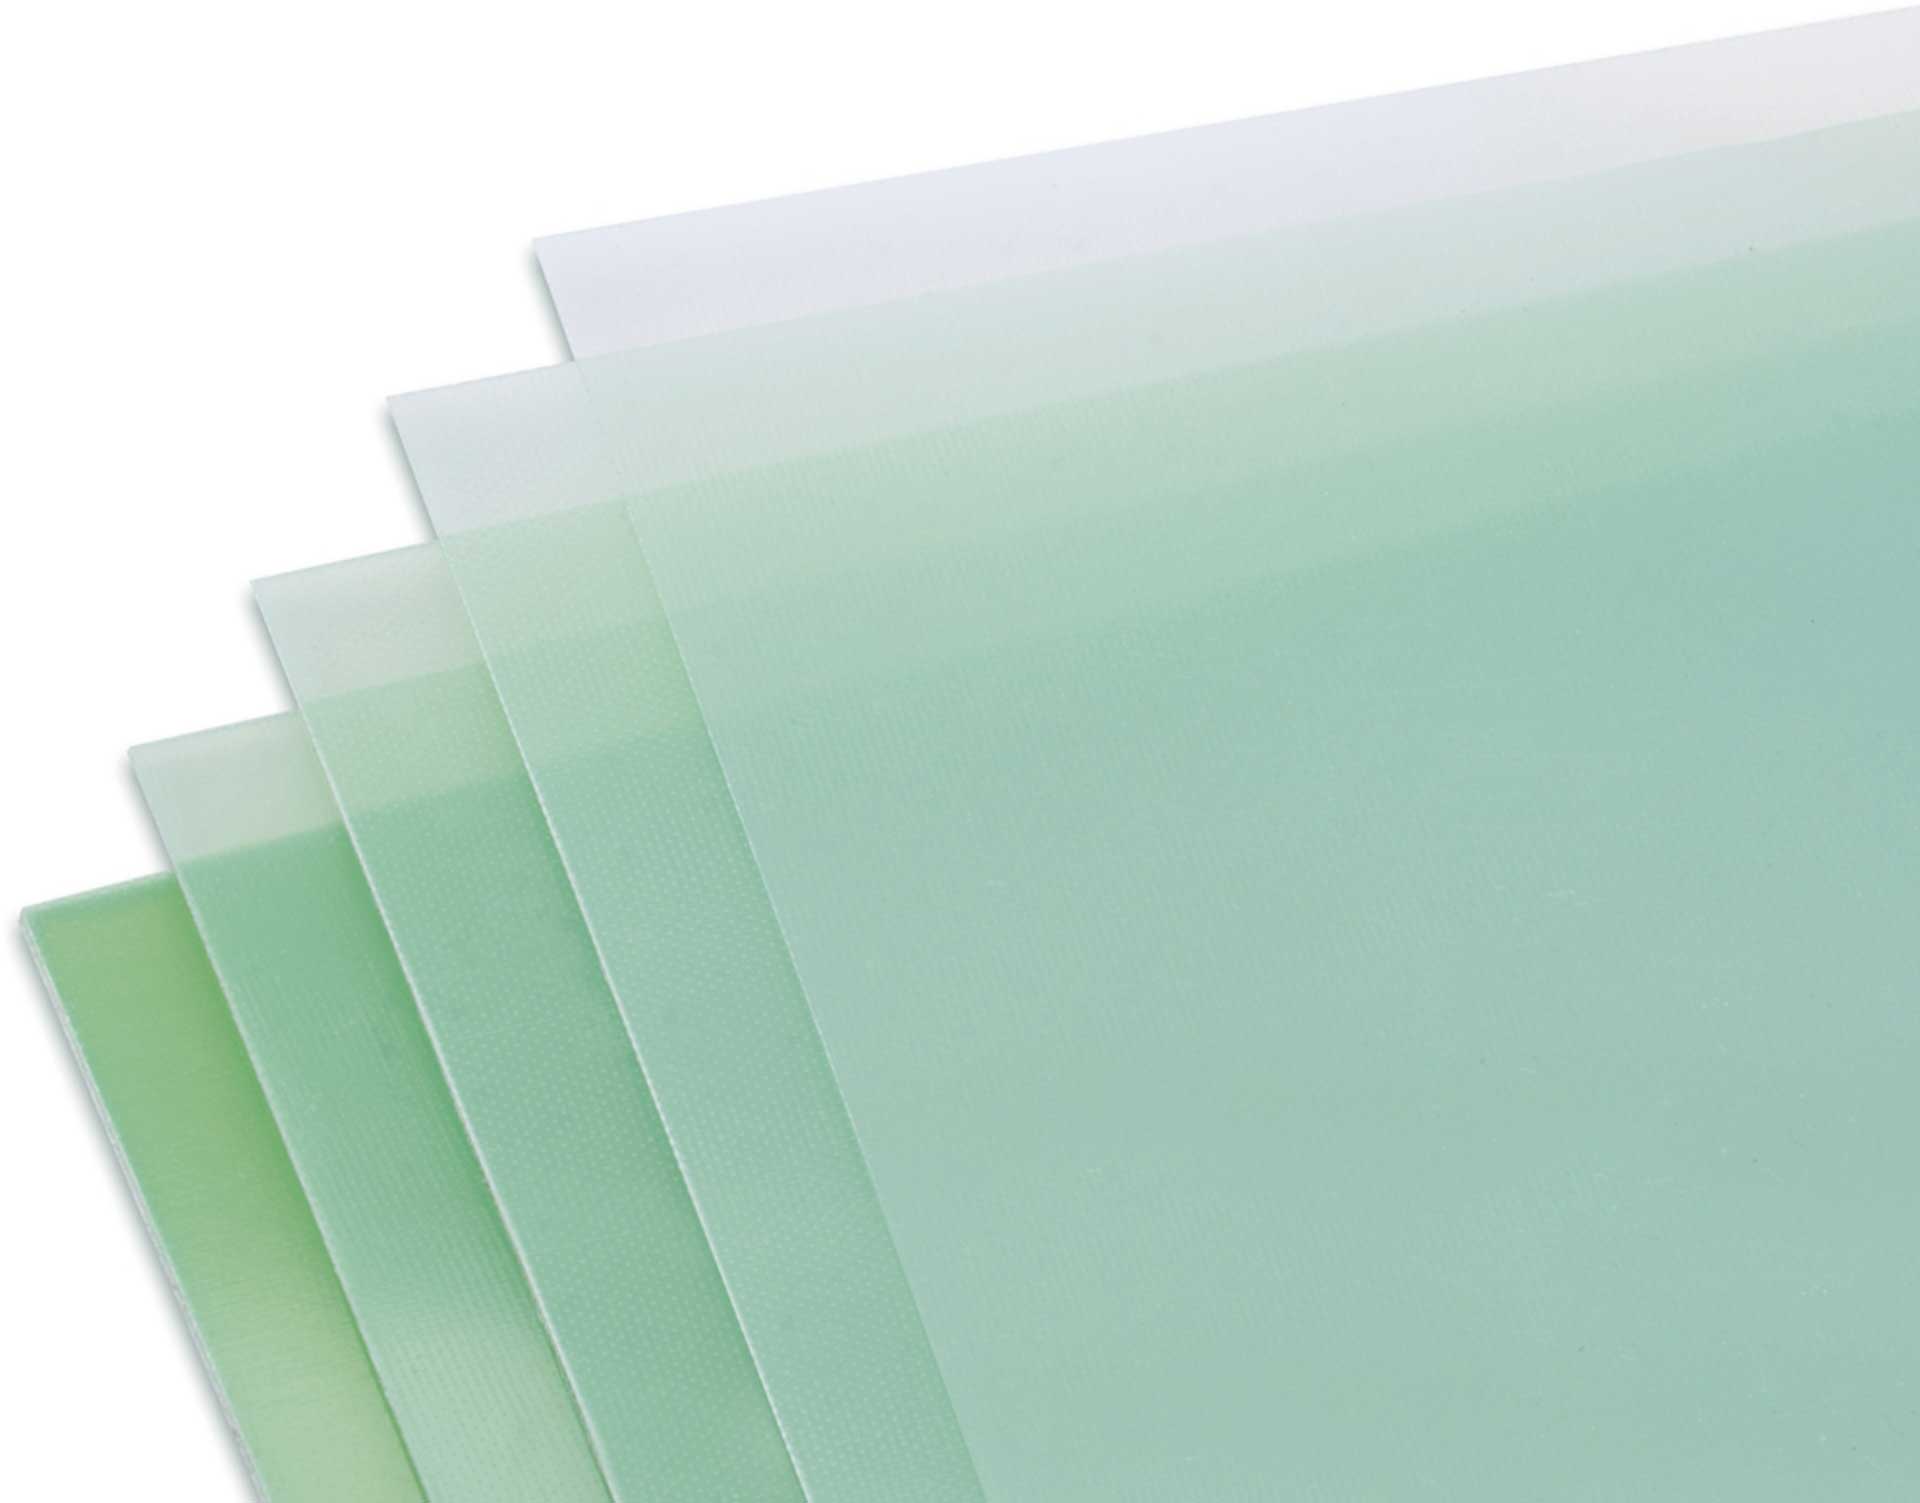 Modellbau Lindinger GFK-Platte 0,8x340x1220mm matt, grünlich transparent